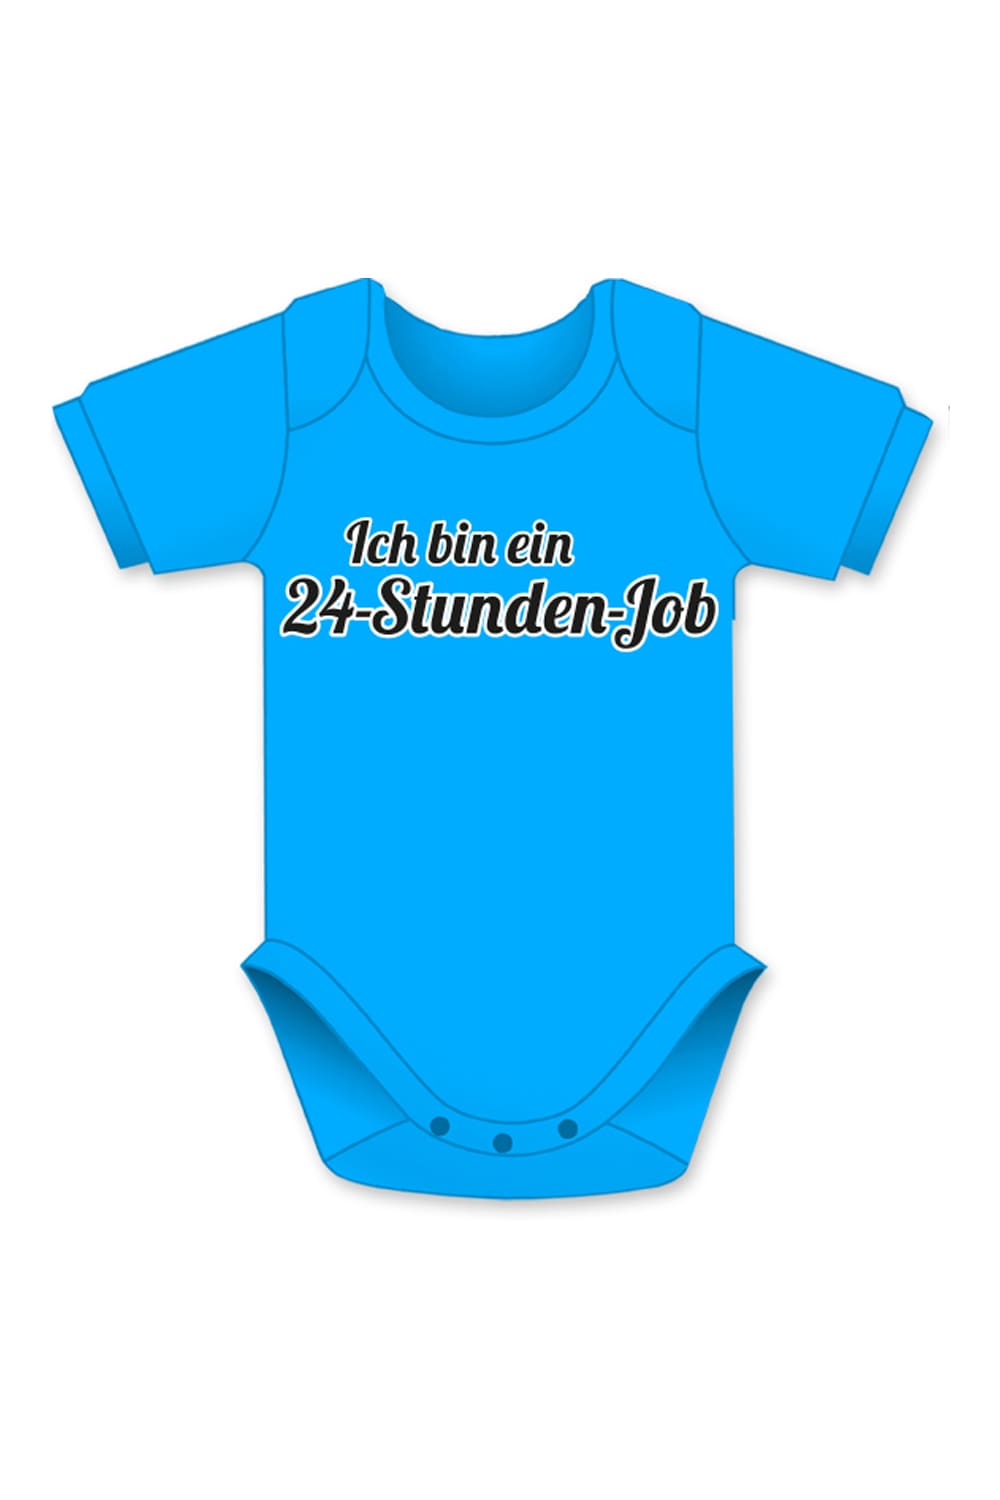 24 Stunden Job Baby Body als witziges Babygeschenk. Baby Body mit dem Spruch: Ich bin ein 24-Stunden-Job. 